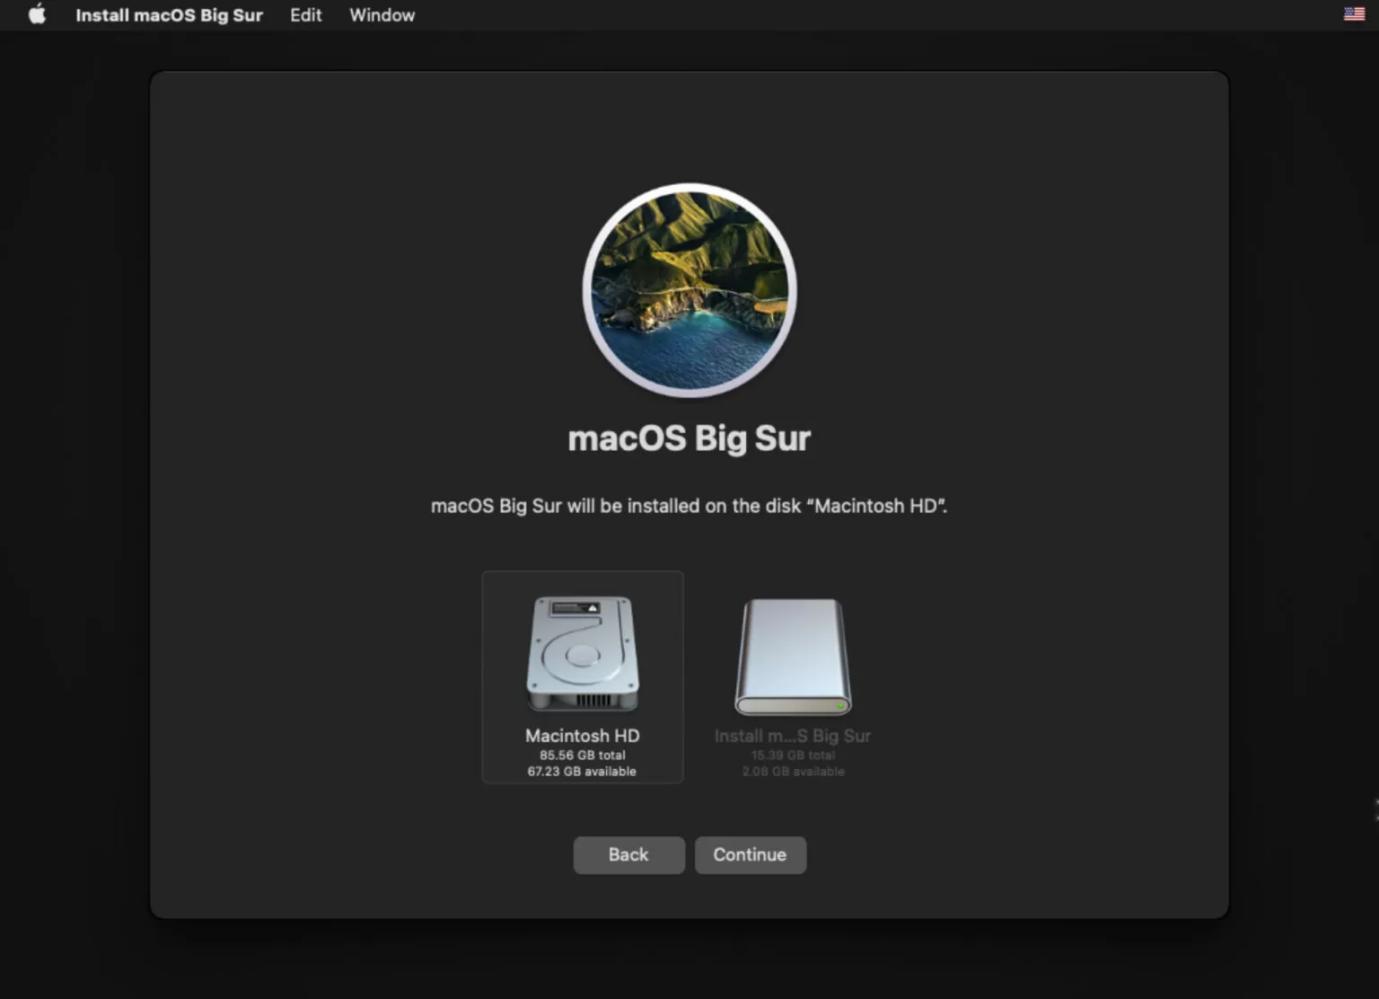 reinstalar o macOS etapa 3 | Nenhum disco de inicialização no Mac